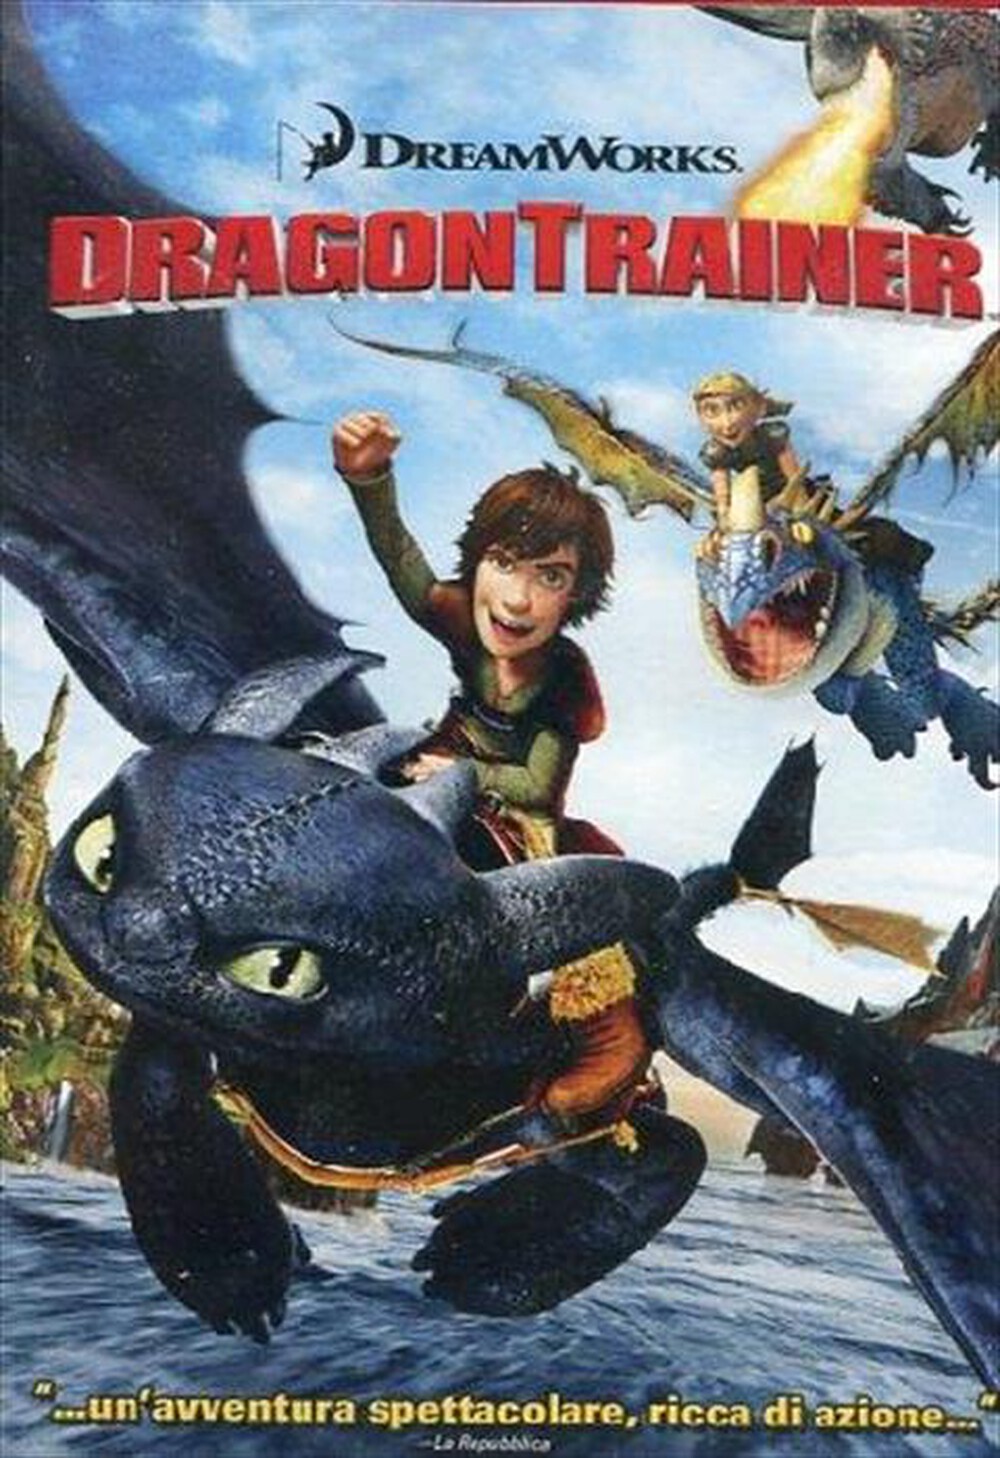 "WALT DISNEY - Dragon Trainer - "